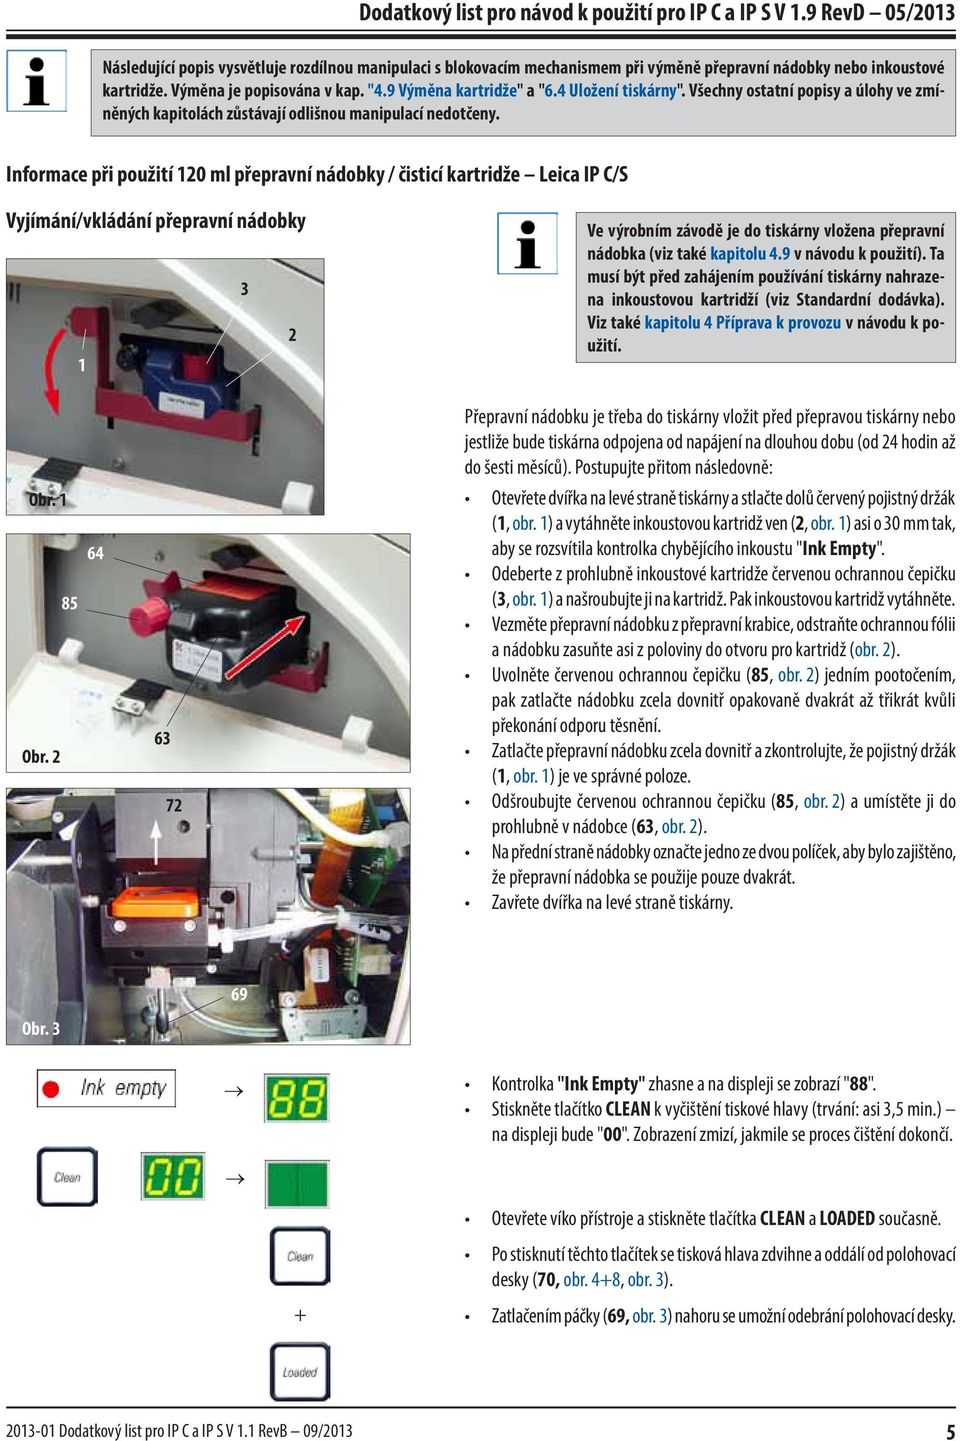 Informace při použití 120 ml přepravní nádobky / čisticí kartridže Leica IP C/S Vyjímání/vkládání přepravní nádobky 3 2 1 Ve výrobním závodě je do tiskárny vložena přepravní nádobka (viz také